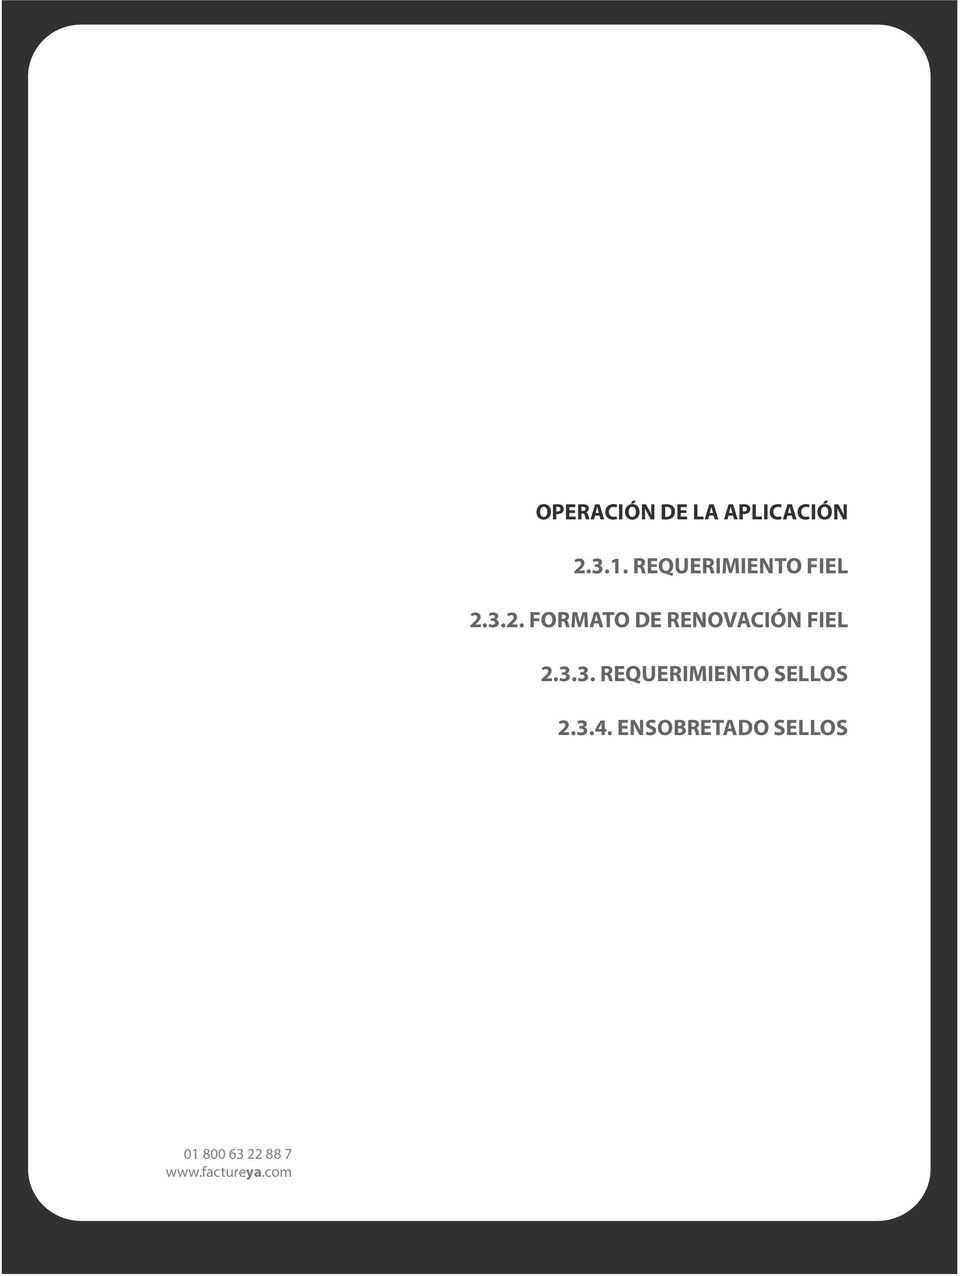 3.2. FORMATO DE RENOVACIÓN FIEL 2.